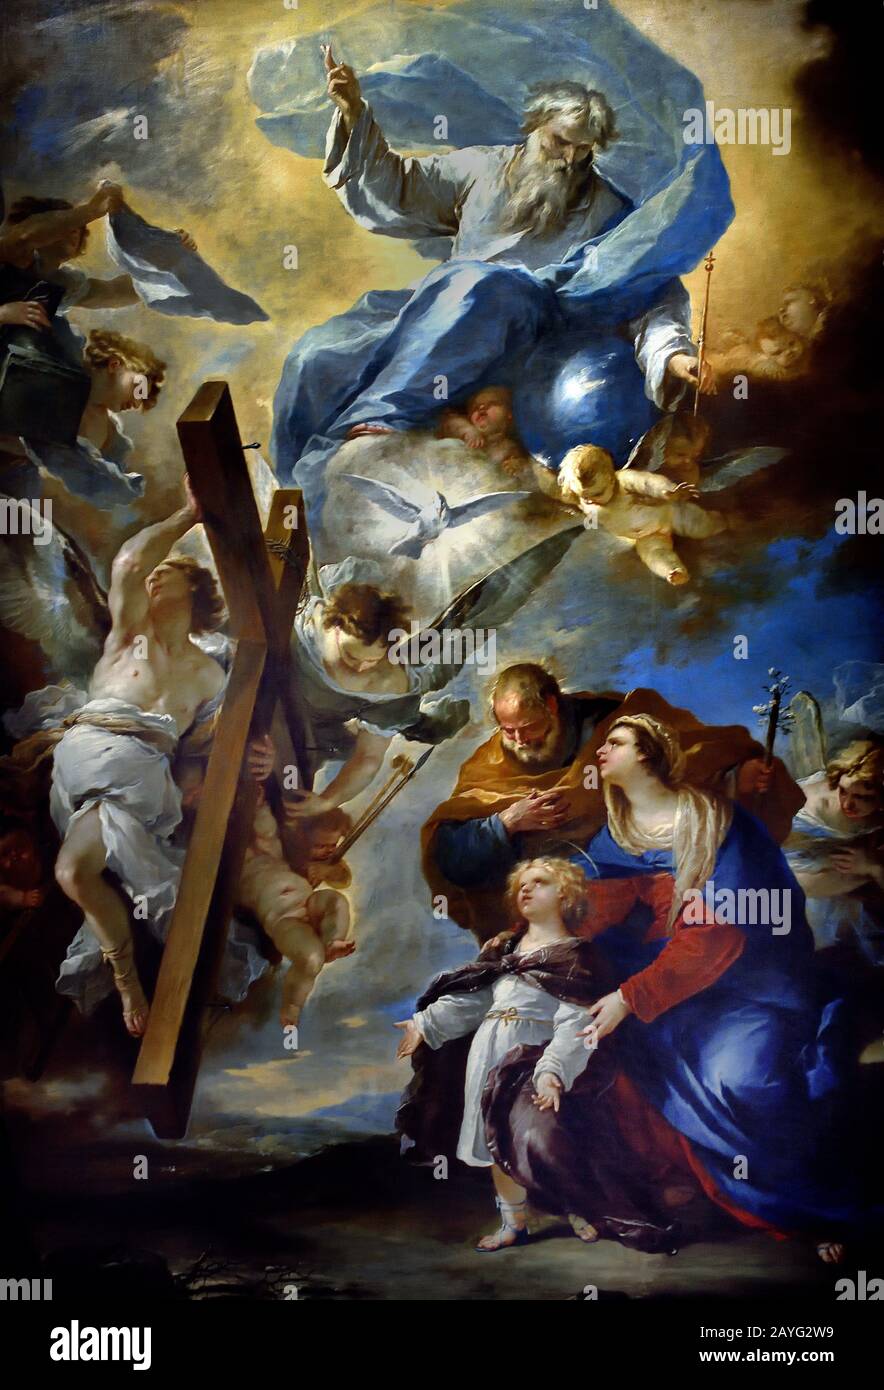 La Sainte famille aux symboles de la Passion, 1660 Luca Giordano 1634-1705 était un peintre baroque tardif italien, Italie, Banque D'Images